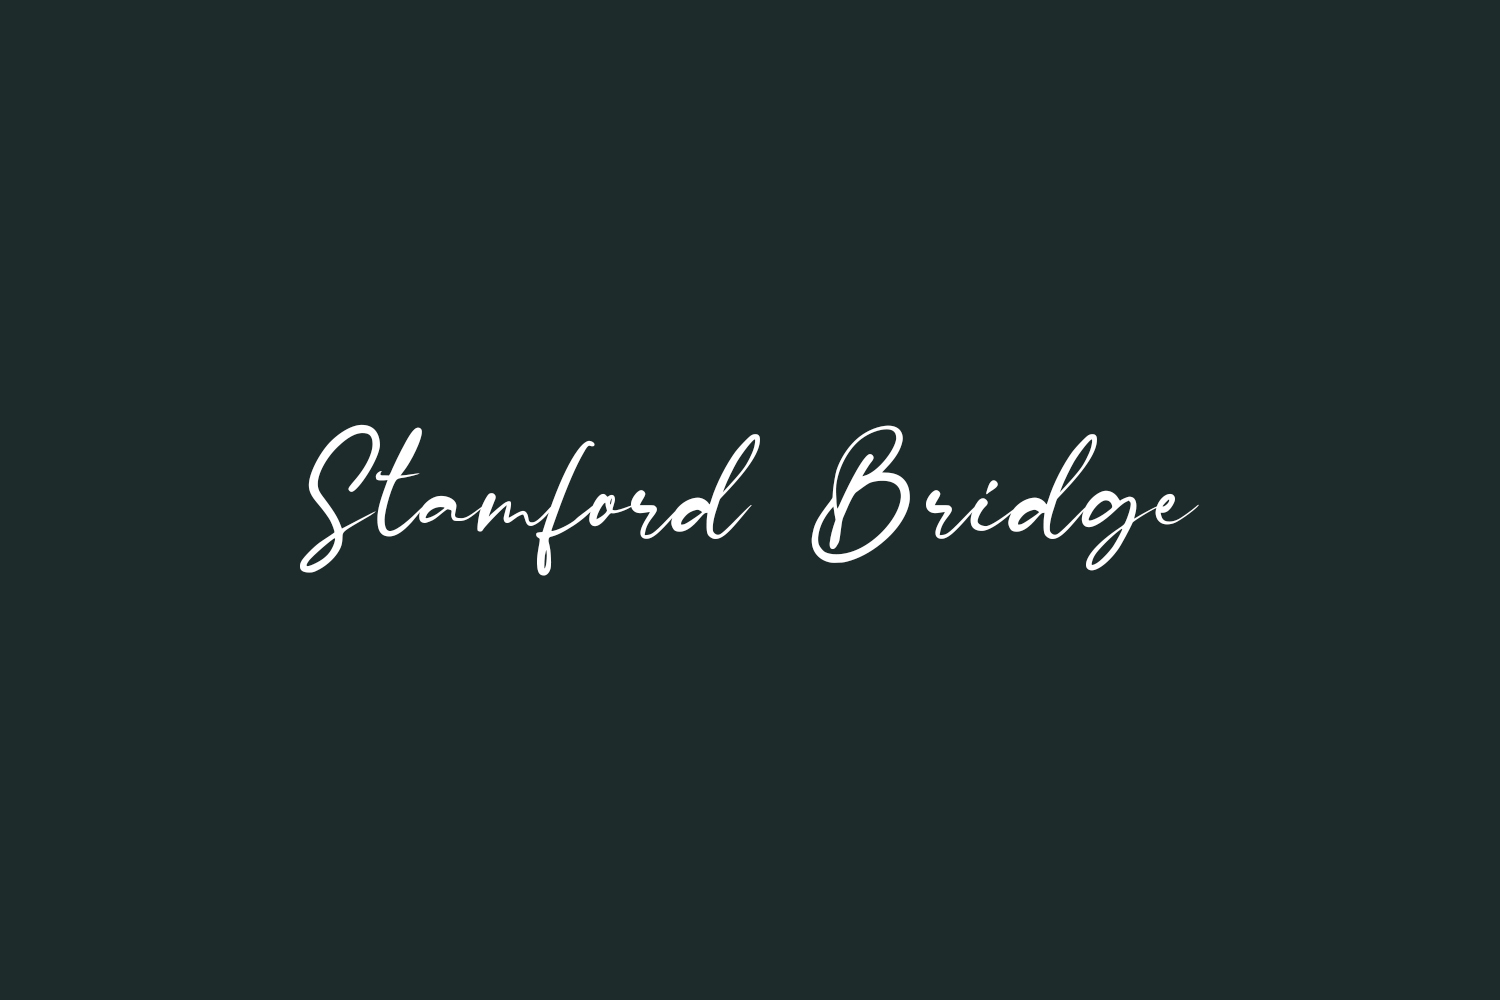 Stamford Bridge Free Font